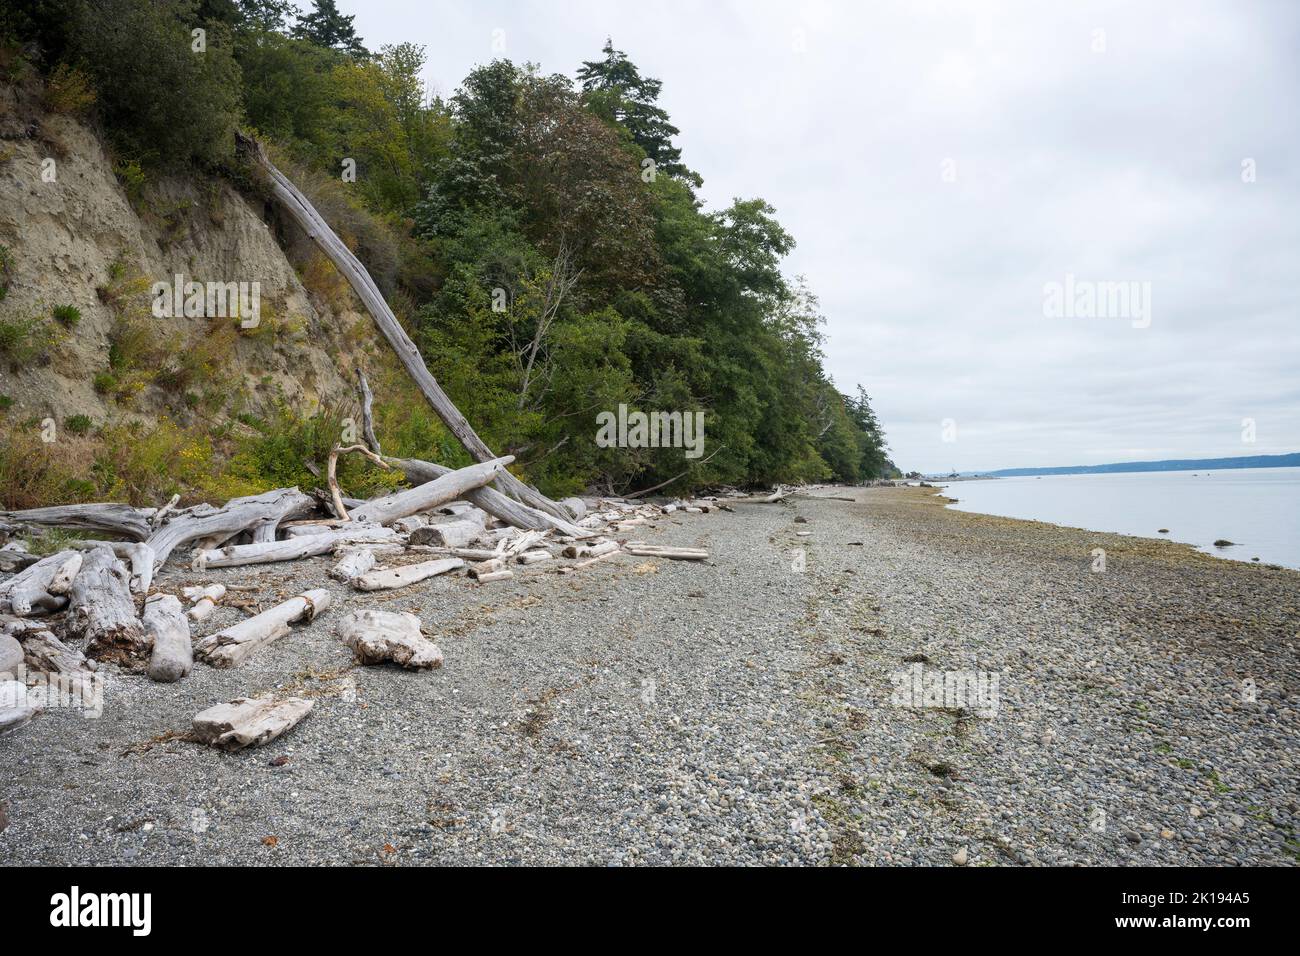 La spiaggia rocciosa del Camano Island state Park a Camano Island, Island County, Washington state, USA. Foto Stock